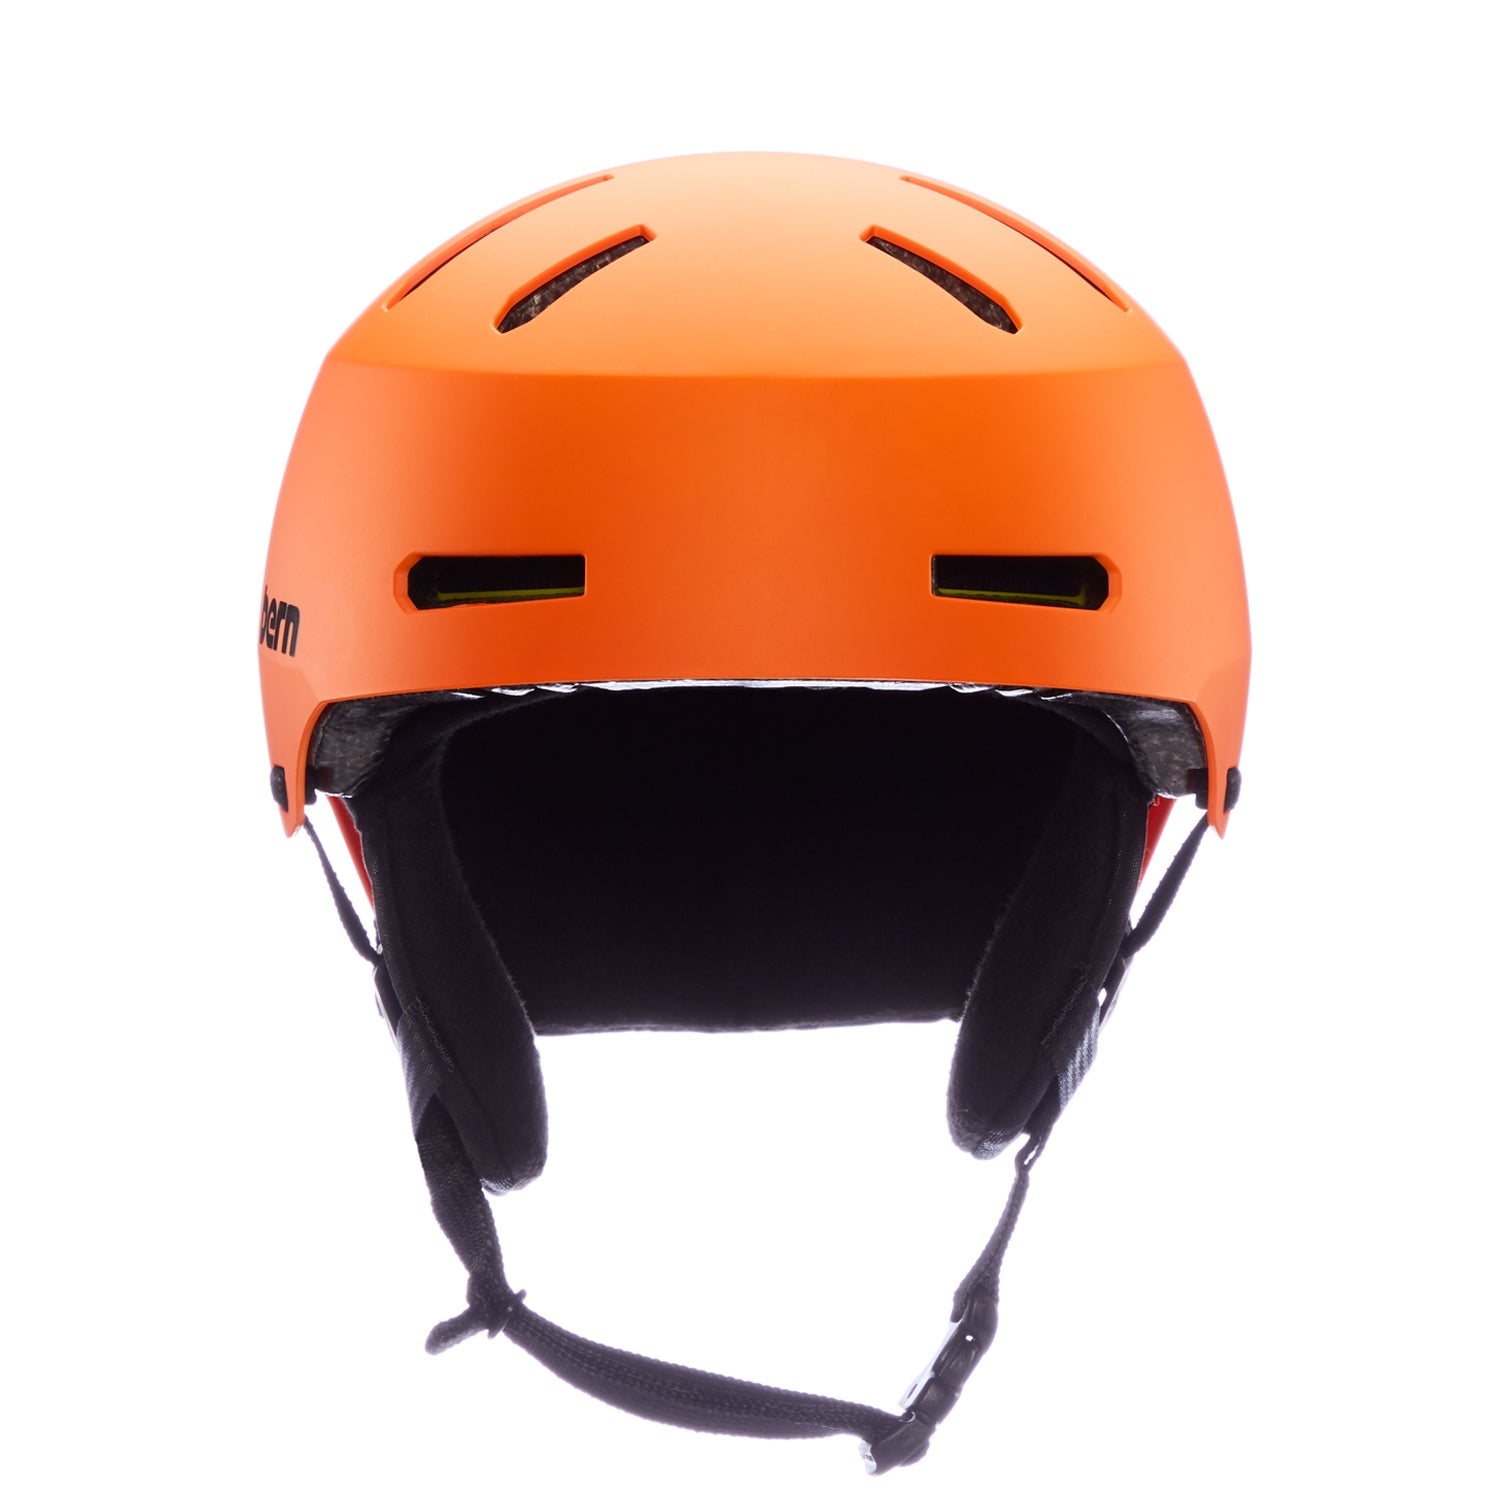 Bern Macon 2.0 Jr. Snow Helmet - 88 Gear